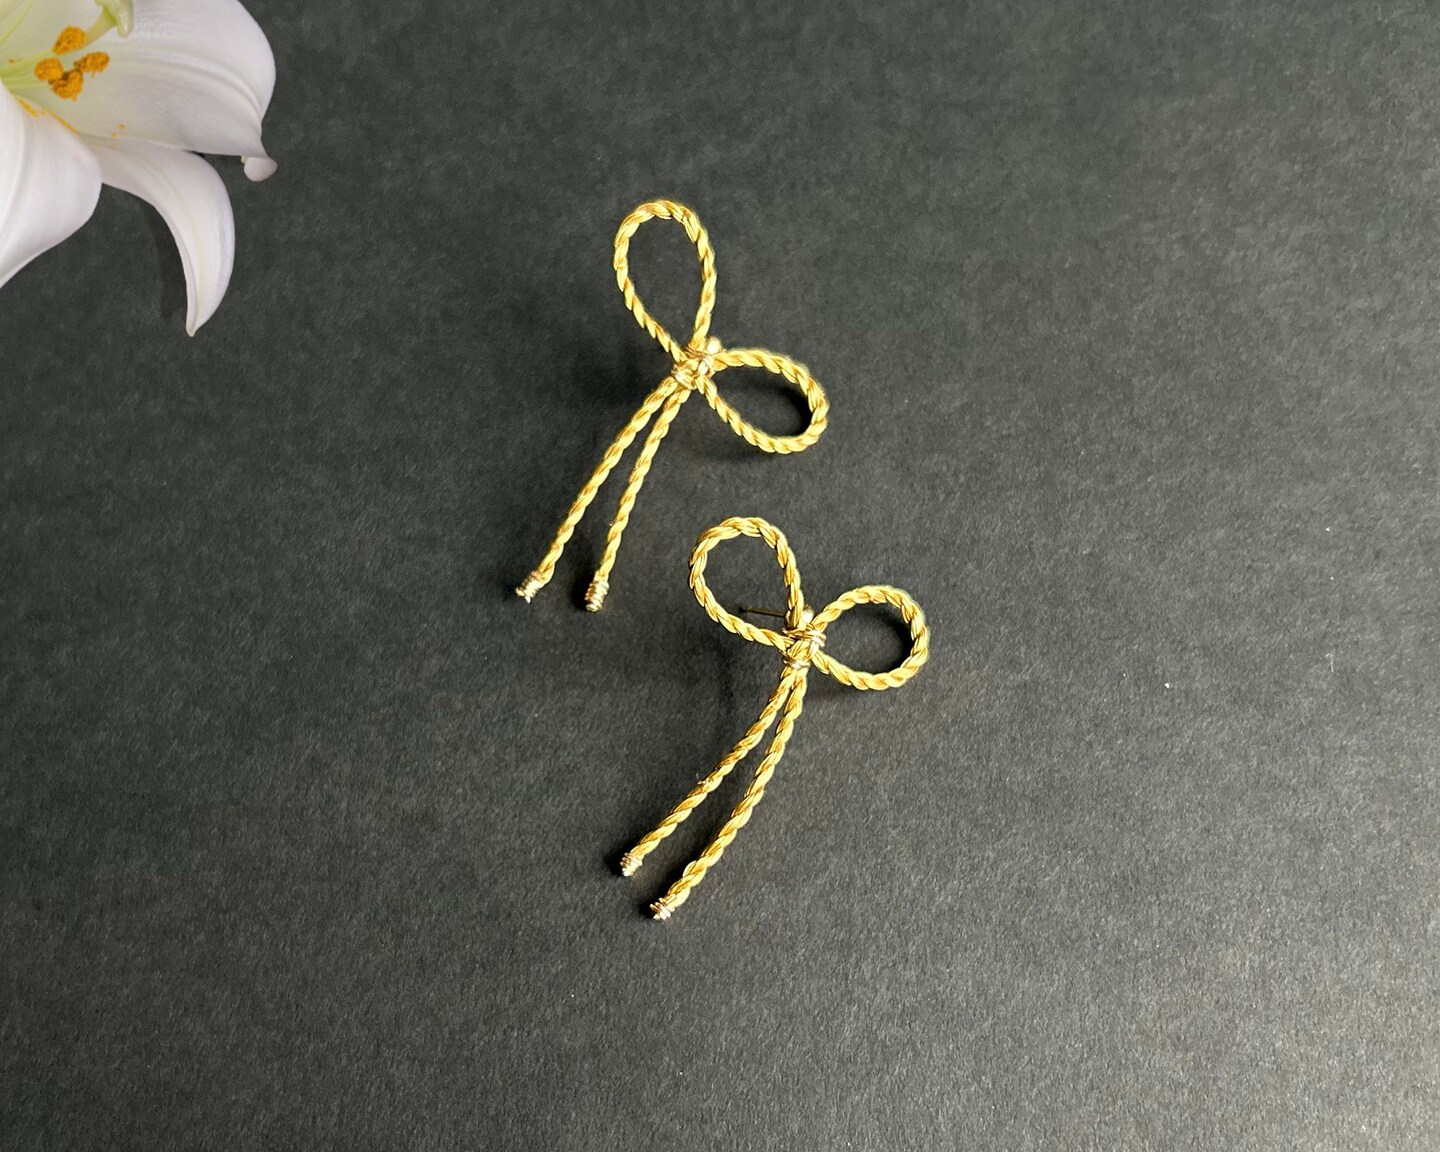 Eco-friendly golden bow earrings 307195859960610816